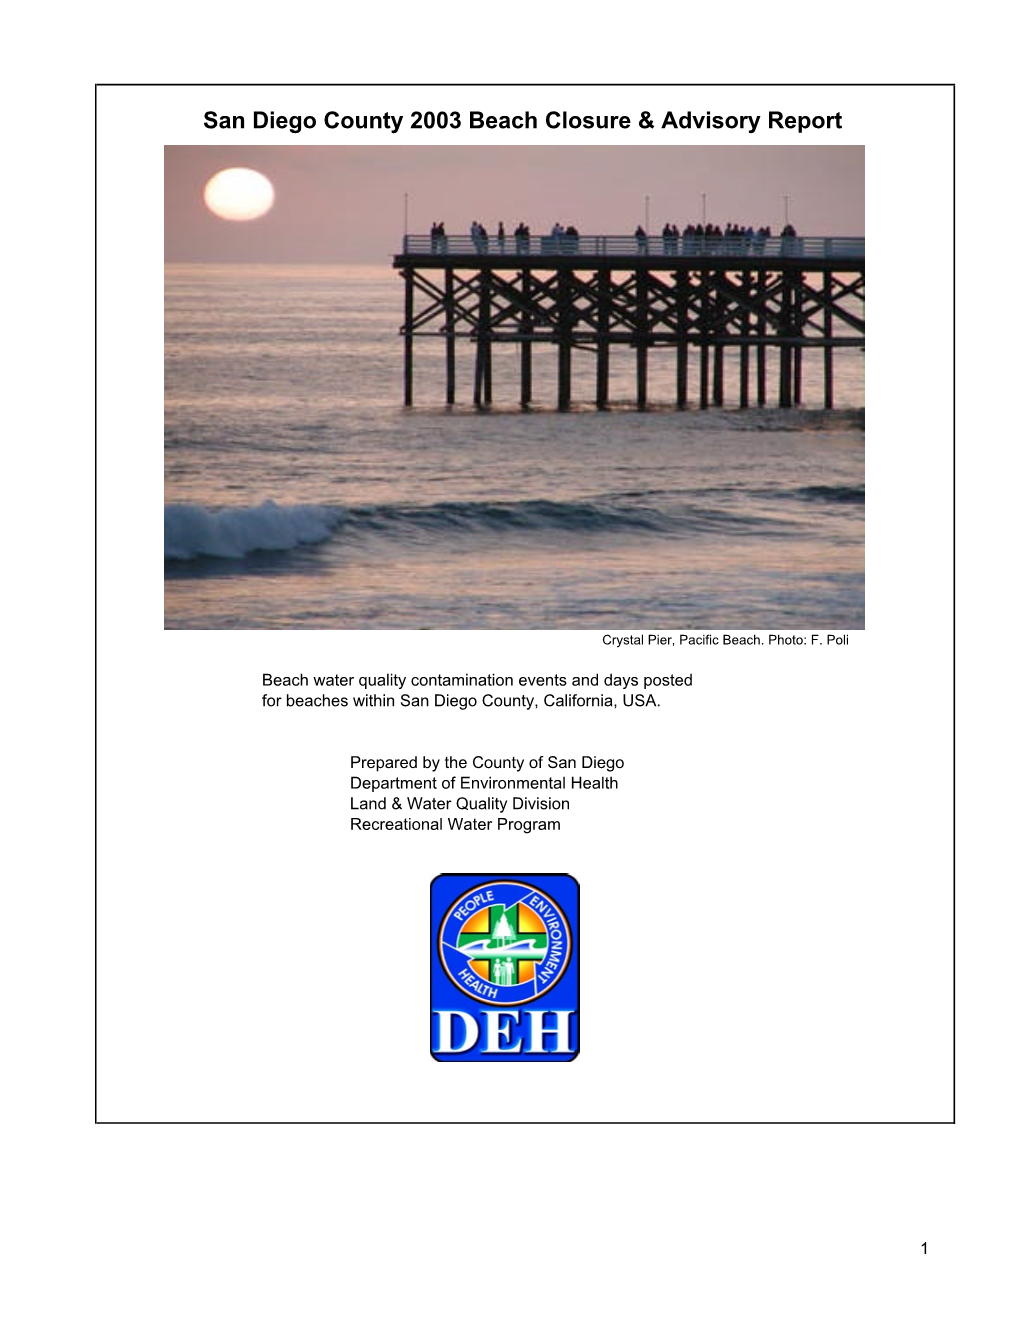 2003 Beach Closure Report